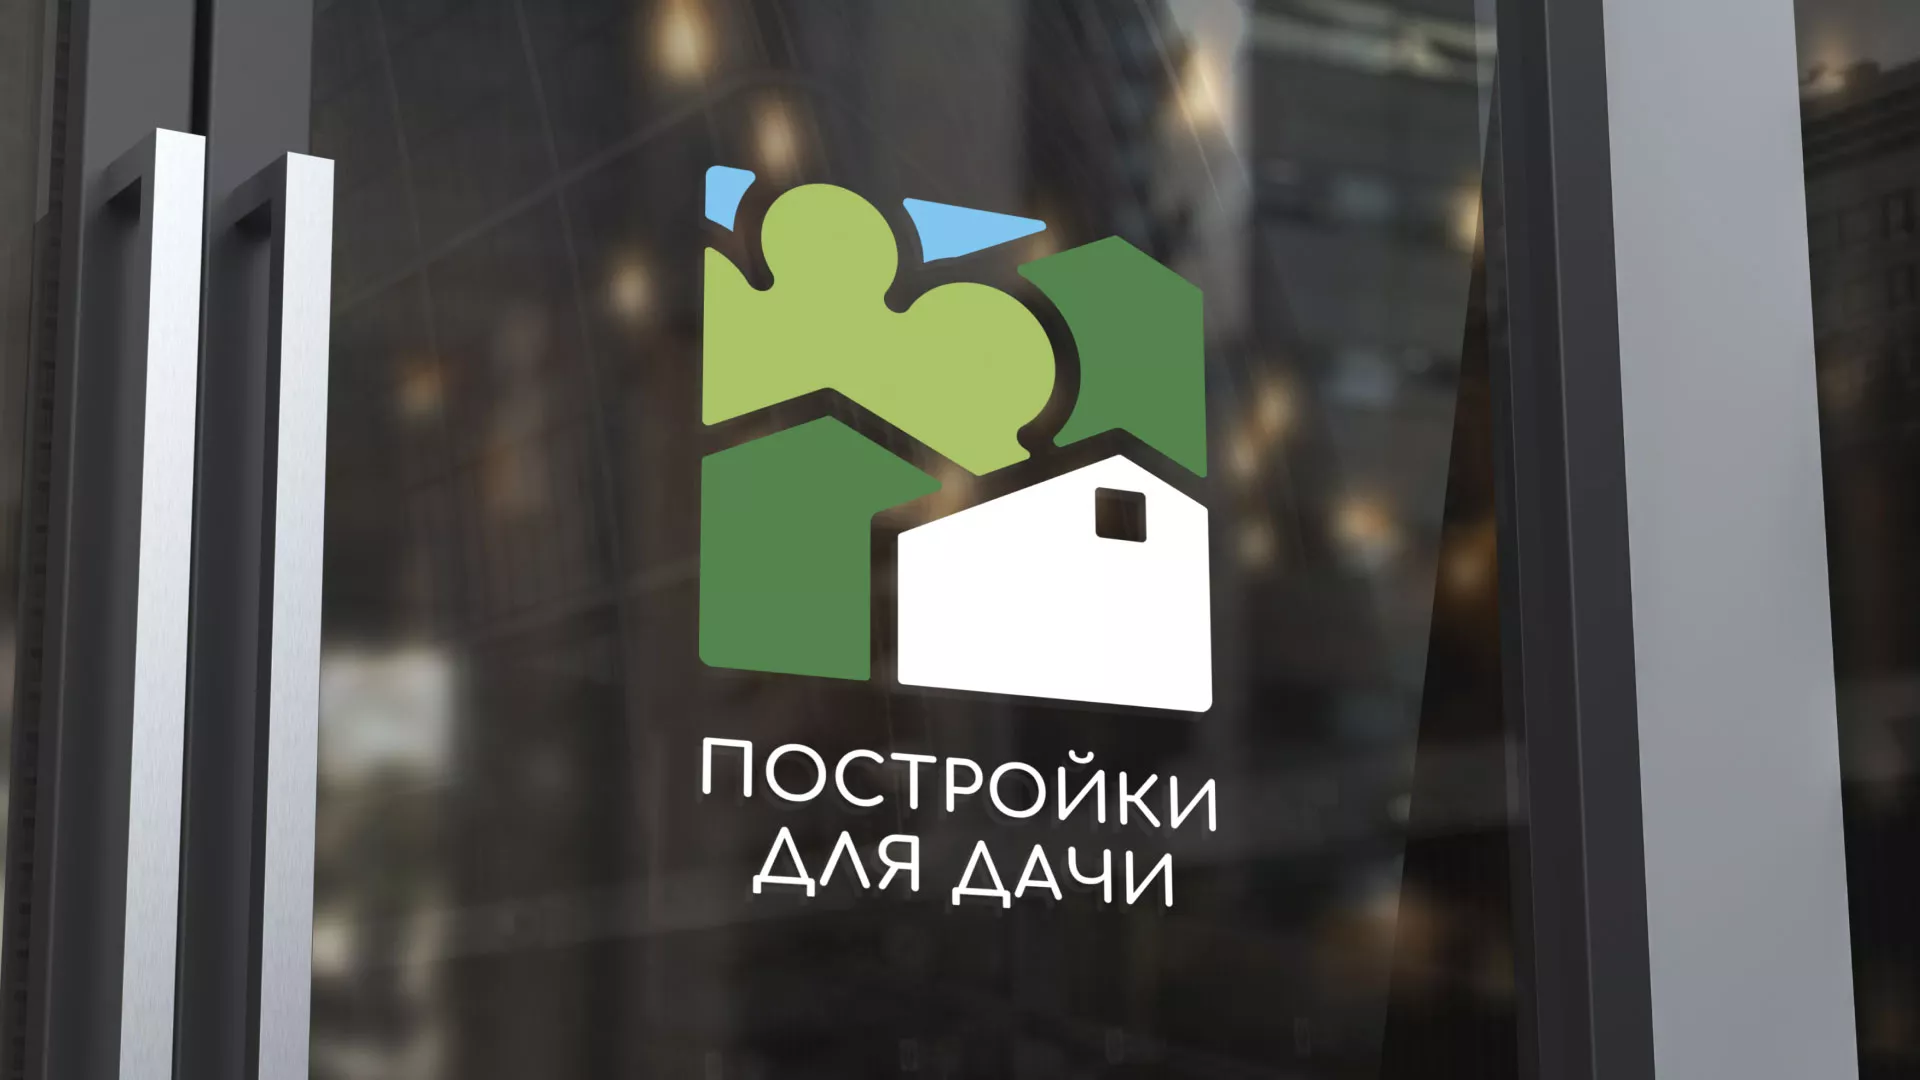 Разработка логотипа в Воткинске для компании «Постройки для дачи»